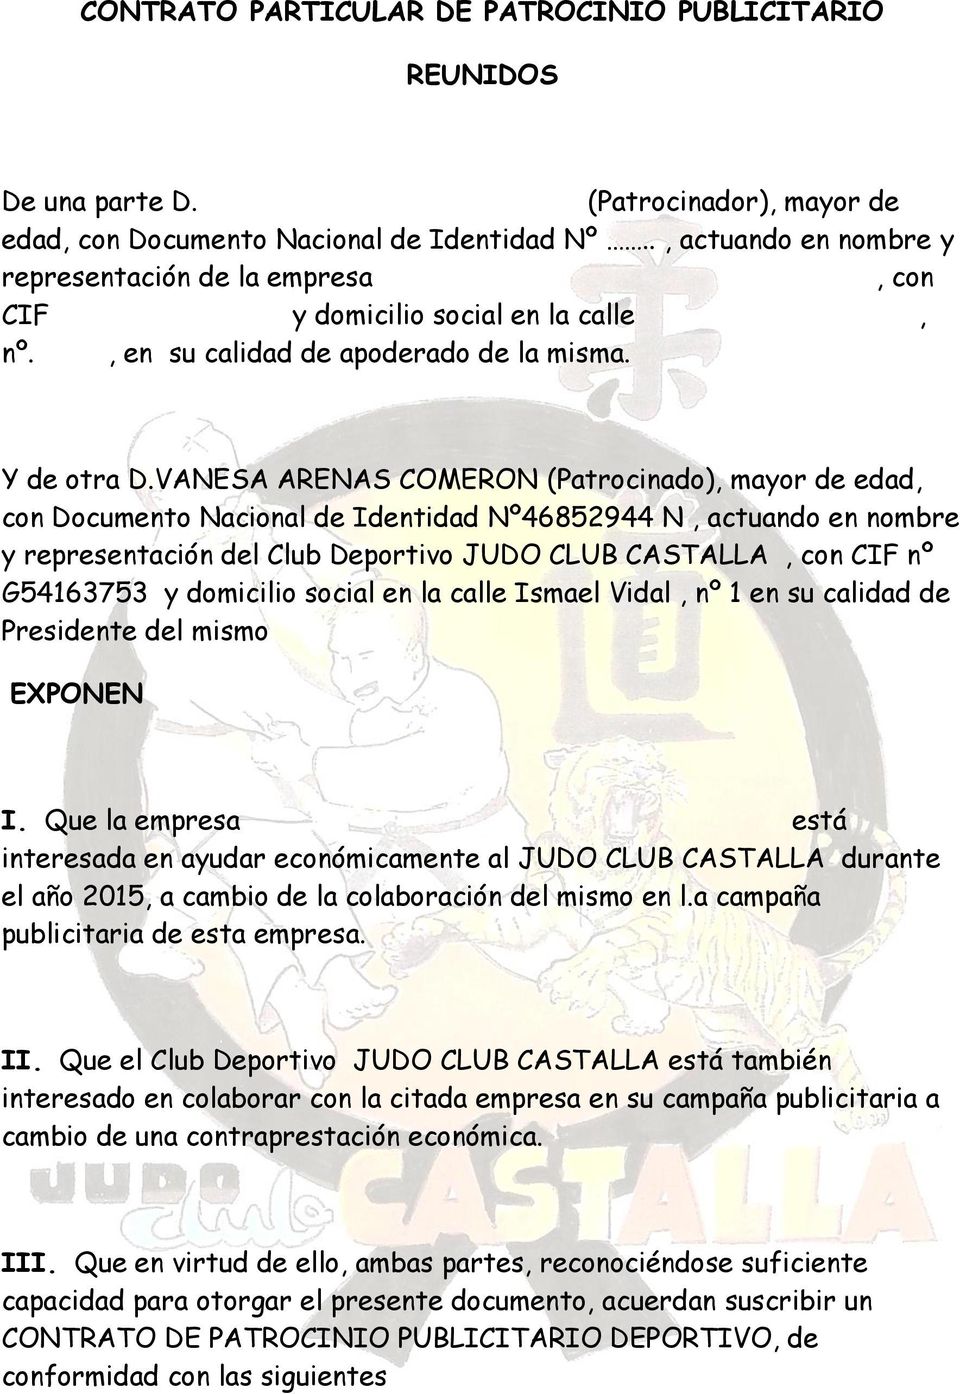 VANESA ARENAS COMERON (Patrocinado), mayor de edad, con Documento Nacional de Identidad Nº46852944 N, actuando en nombre y representación del Club Deportivo JUDO CLUB CASTALLA, con CIF nº G54163753 y